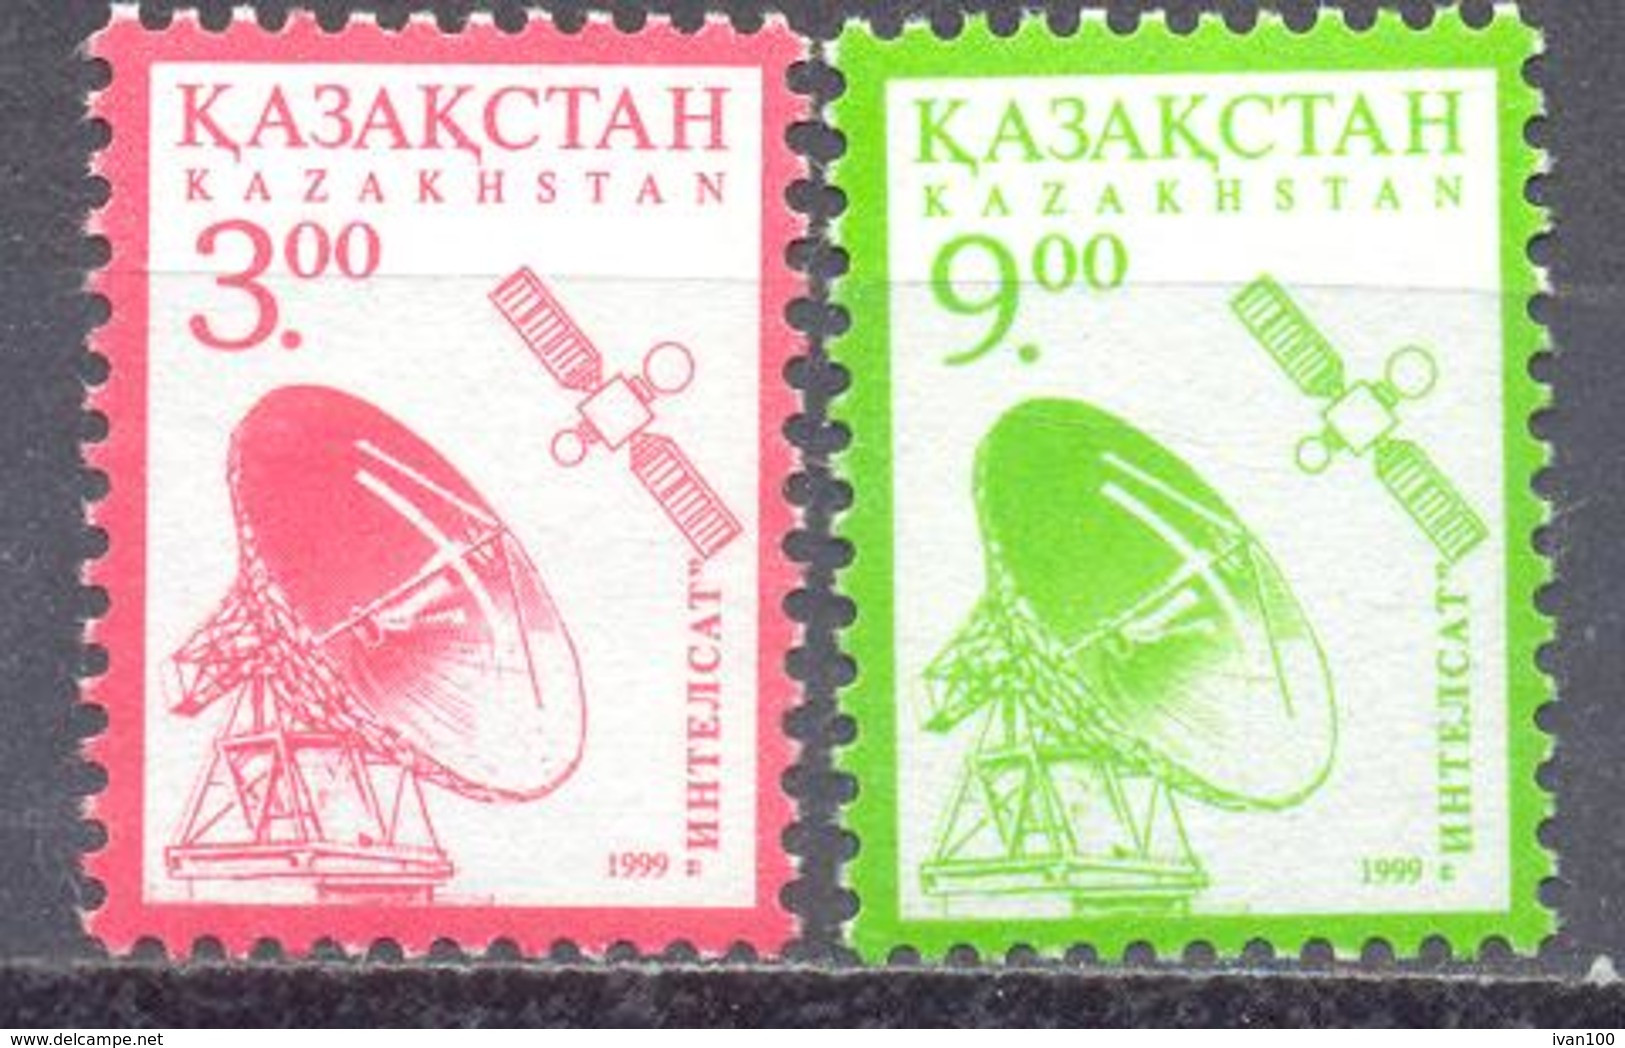 1999. Kazakhstan, Space, Satellites "Intelsat" Communication, 3.00 & 9.00, 2v,  Mint/** - Kazajstán